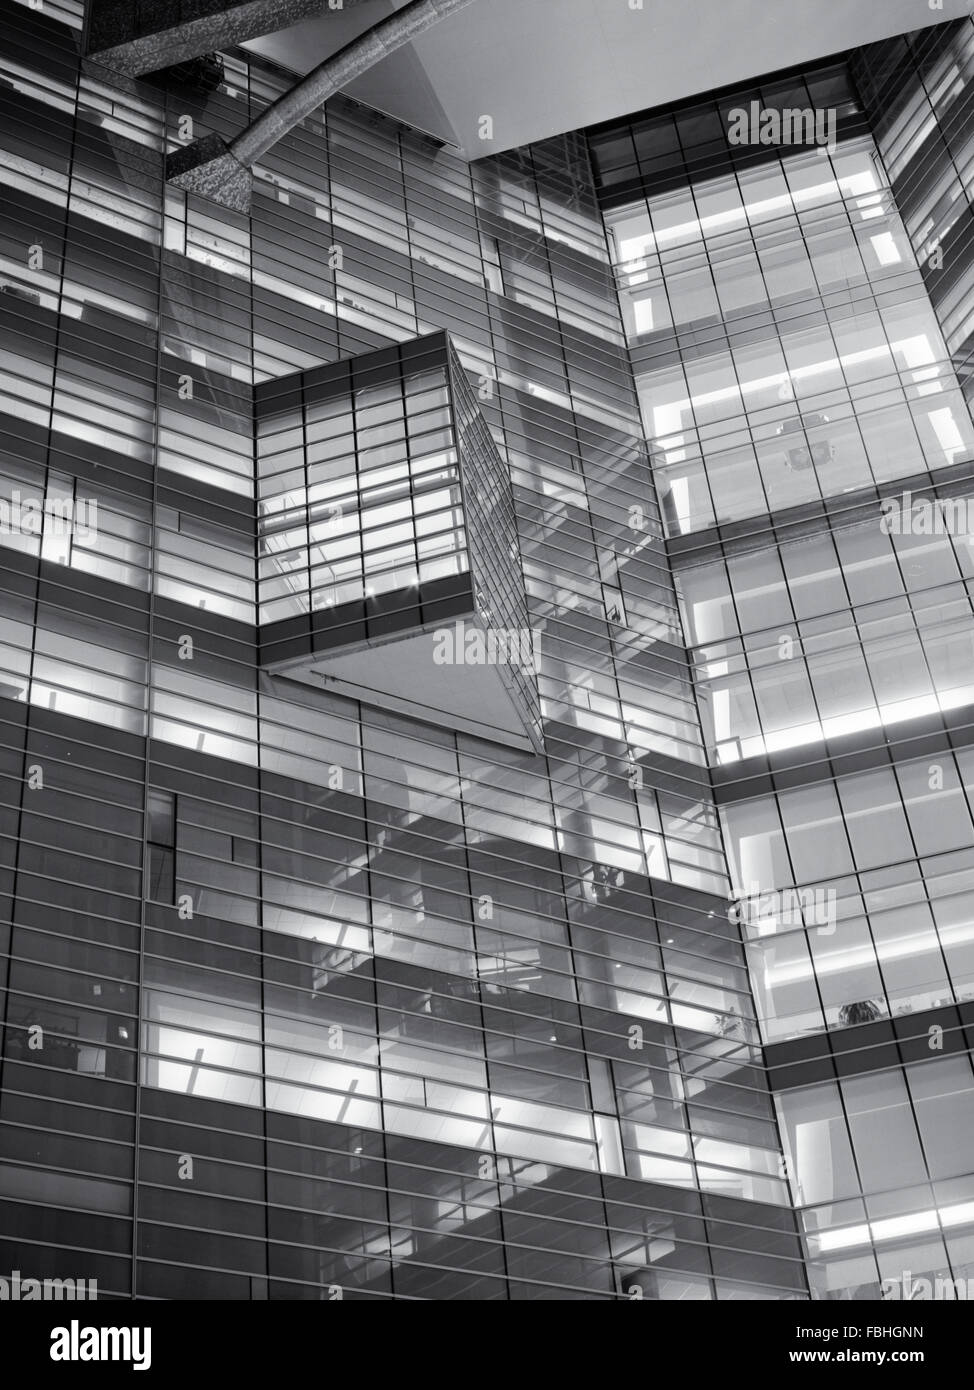 Dettagli architettonici dell'edificio Compuware Detroit Foto Stock